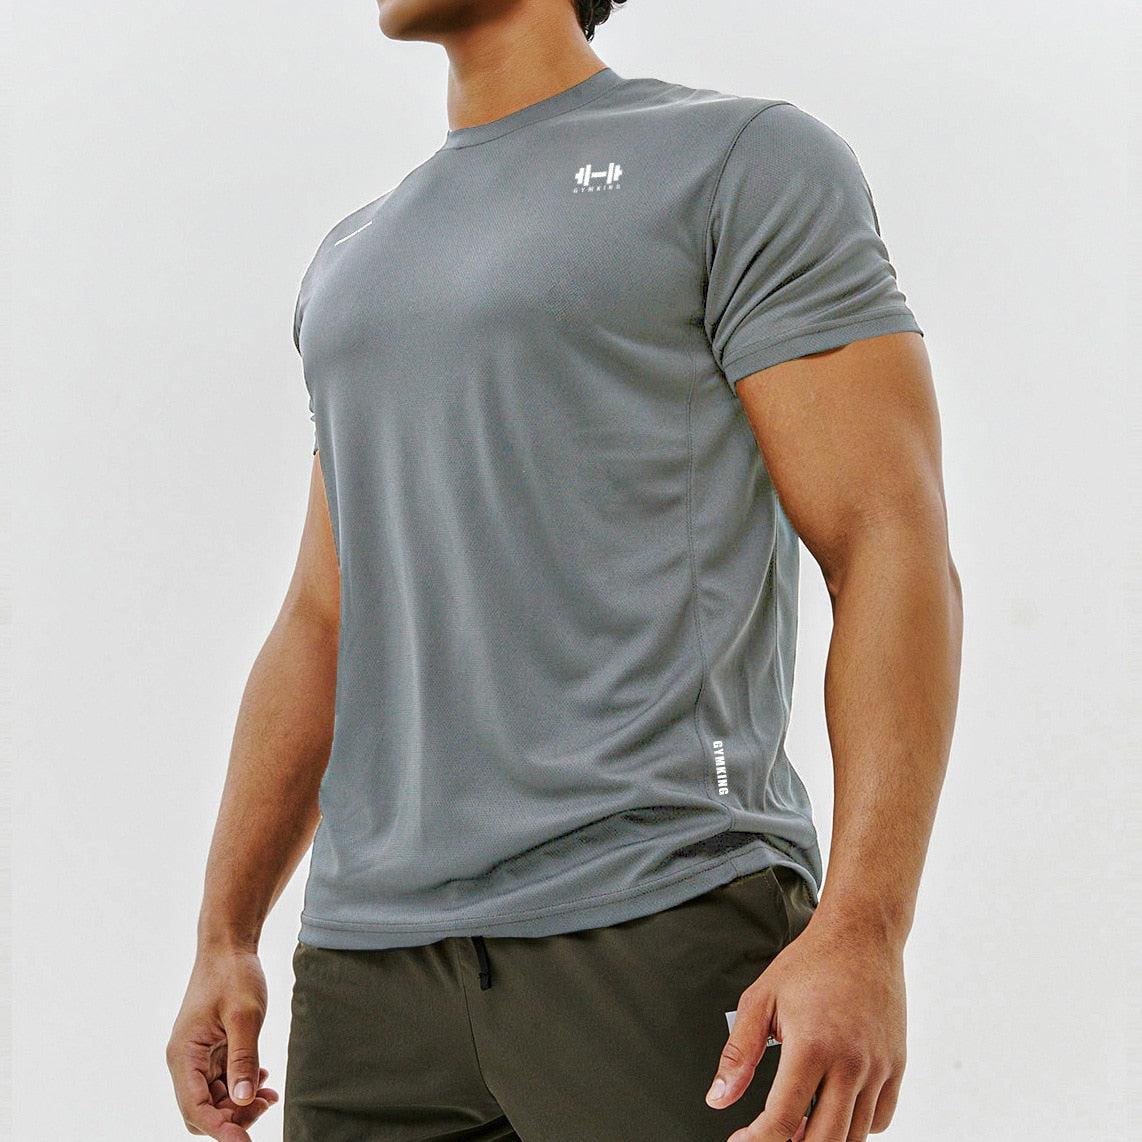 Balerz Gym Fitness T-Shirts Men Running Workout Short Sleeve Tees